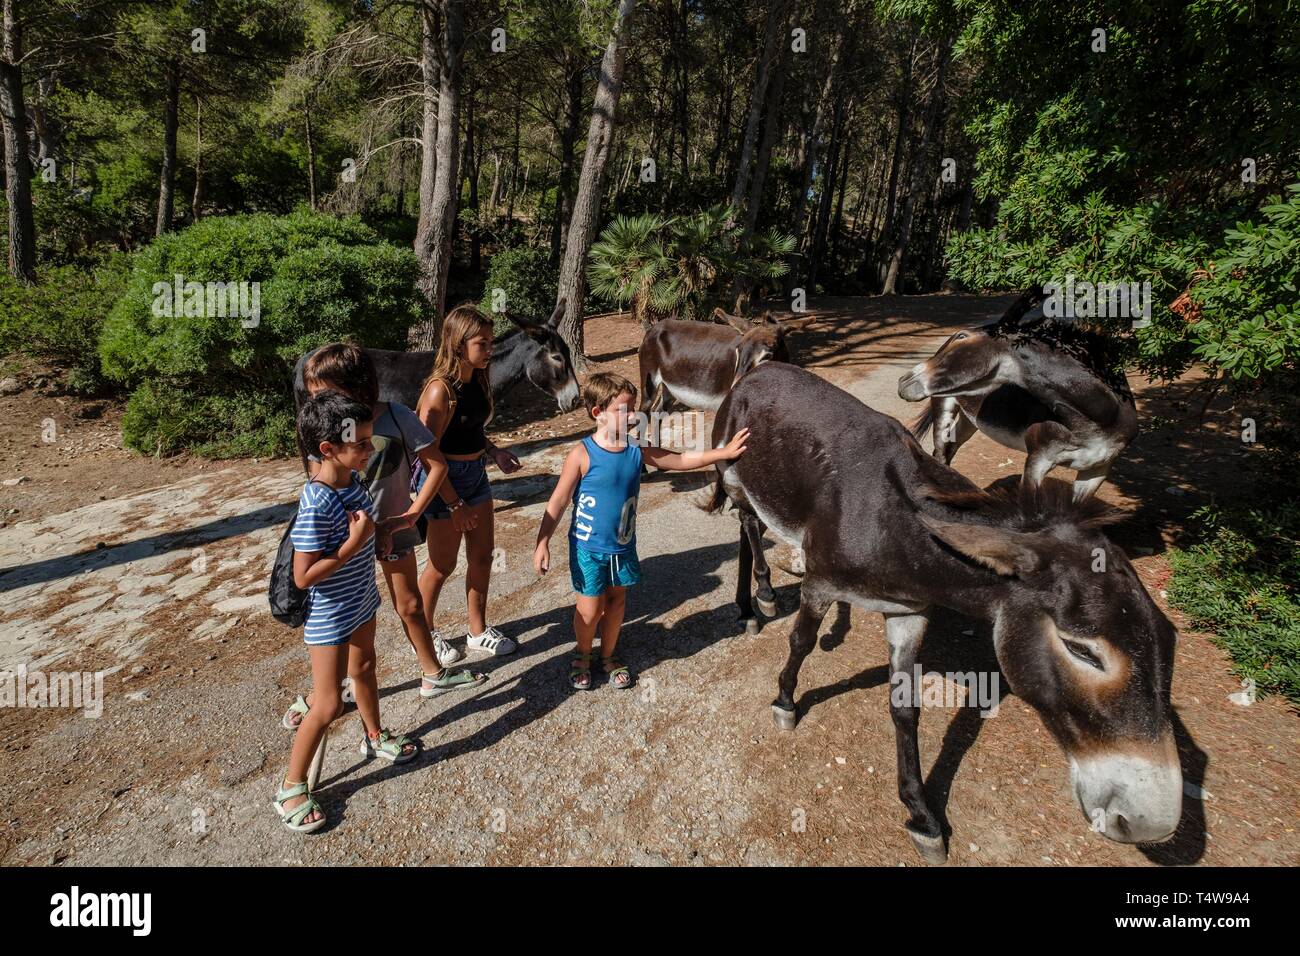 niños jugando con asnos de raza mallorquina, Cala Murta, pollença, Mallorca, balearic islands, Spain. Stock Photo